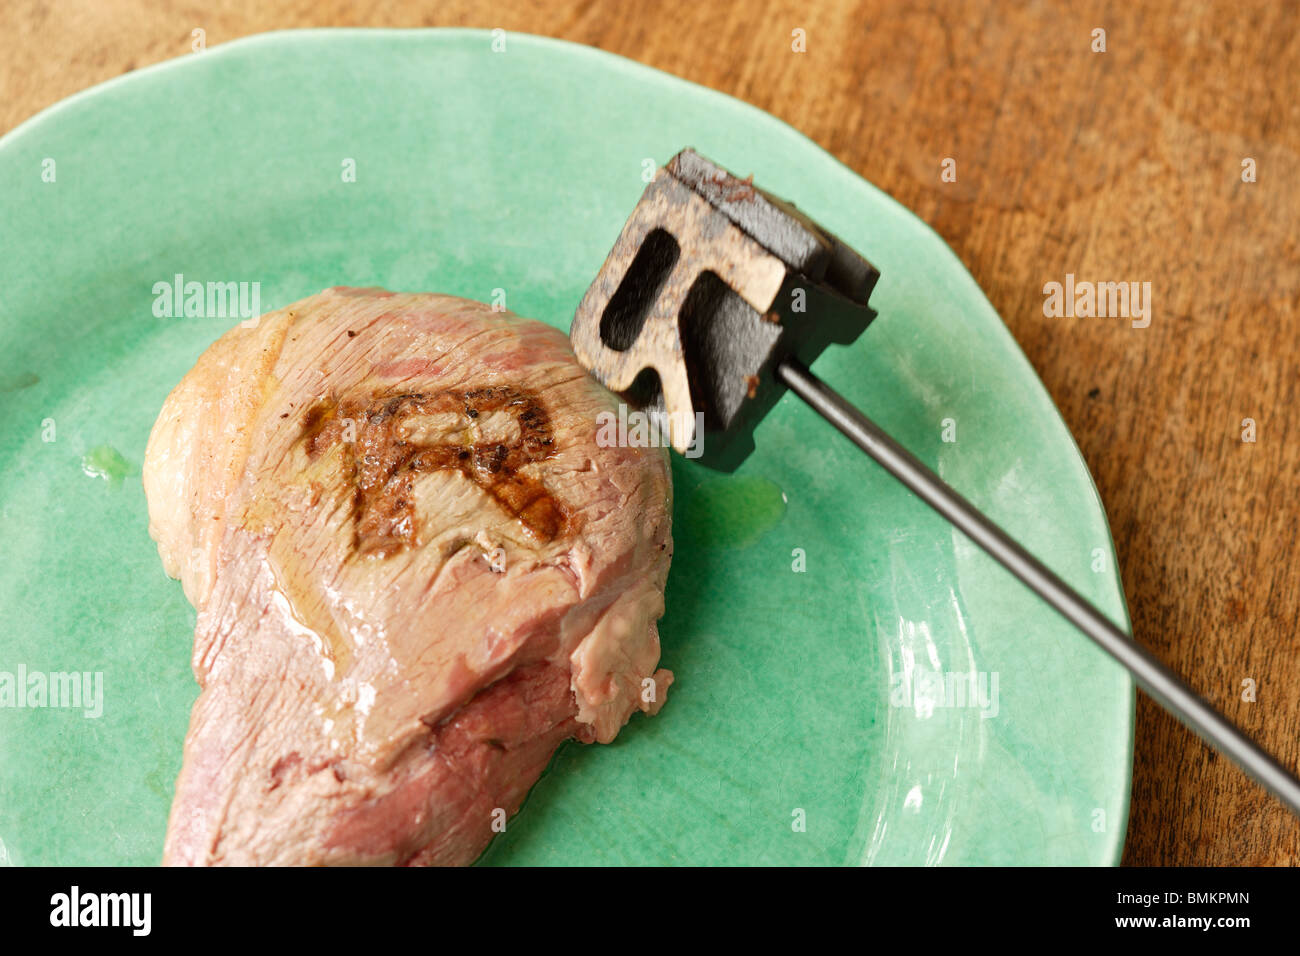 Seltene Mittel oder gut gemacht; Küche oder Barbecue Brandeisen für steaks Stockfoto